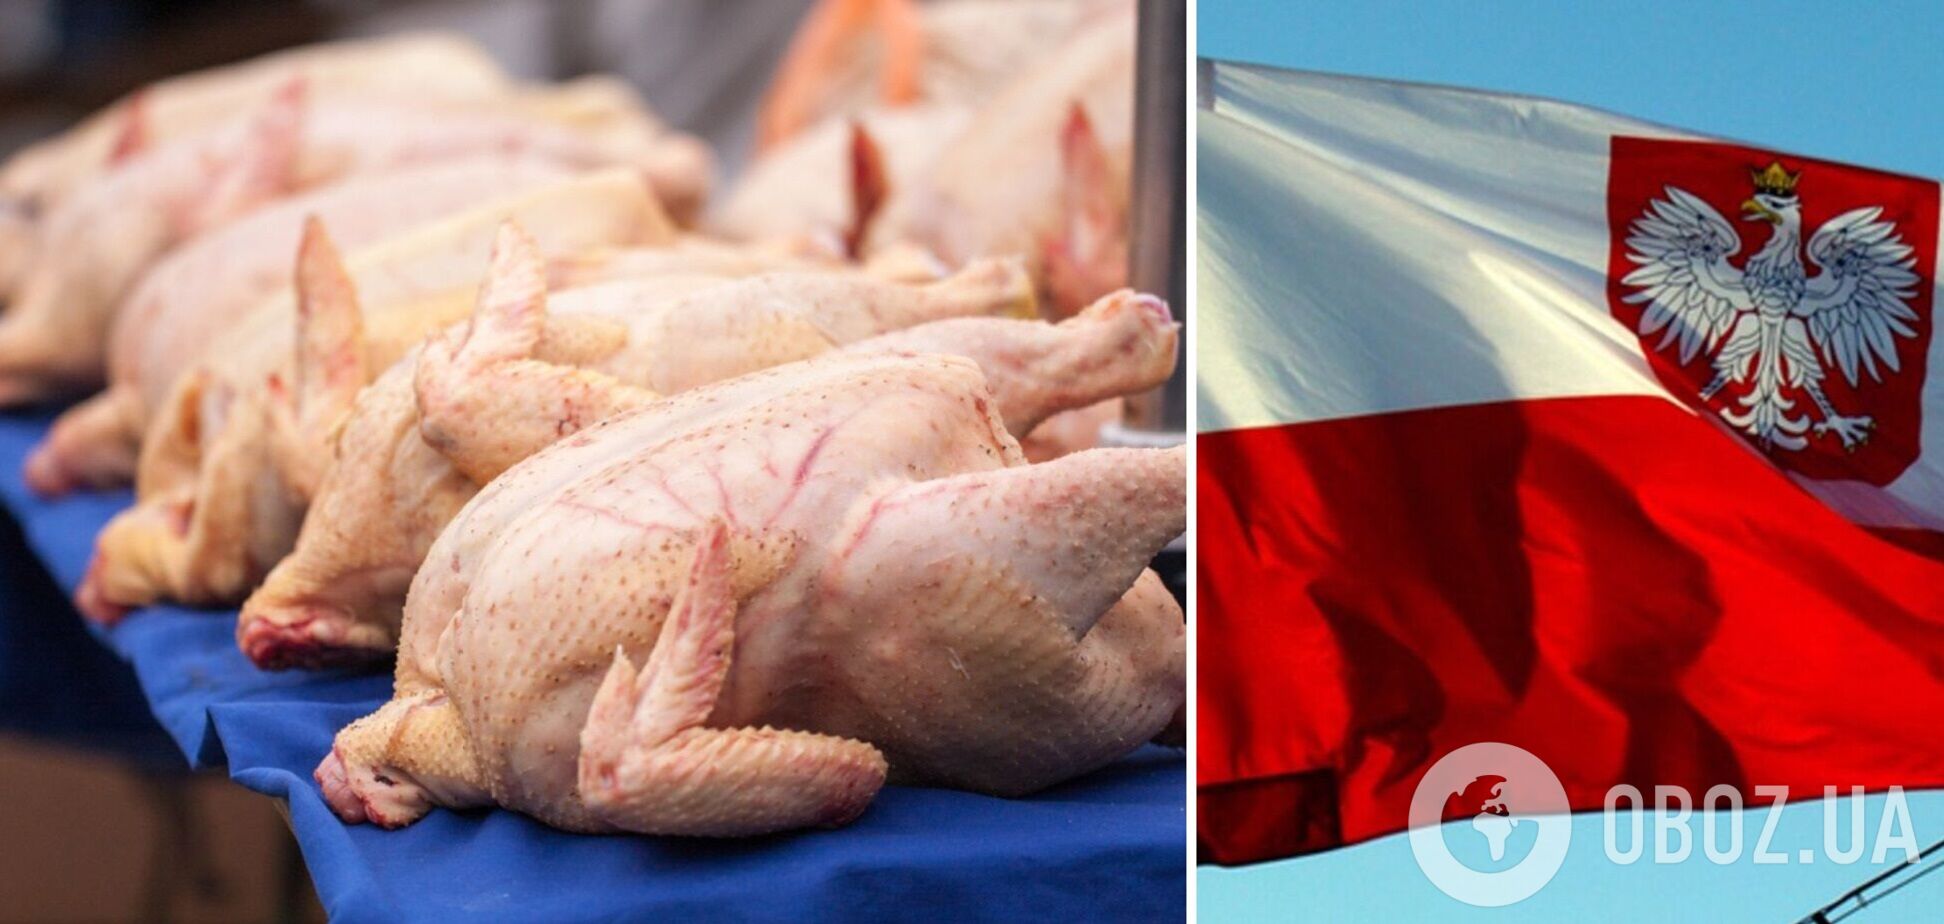 В Украину из Польши завезли курятину с сальмонеллой